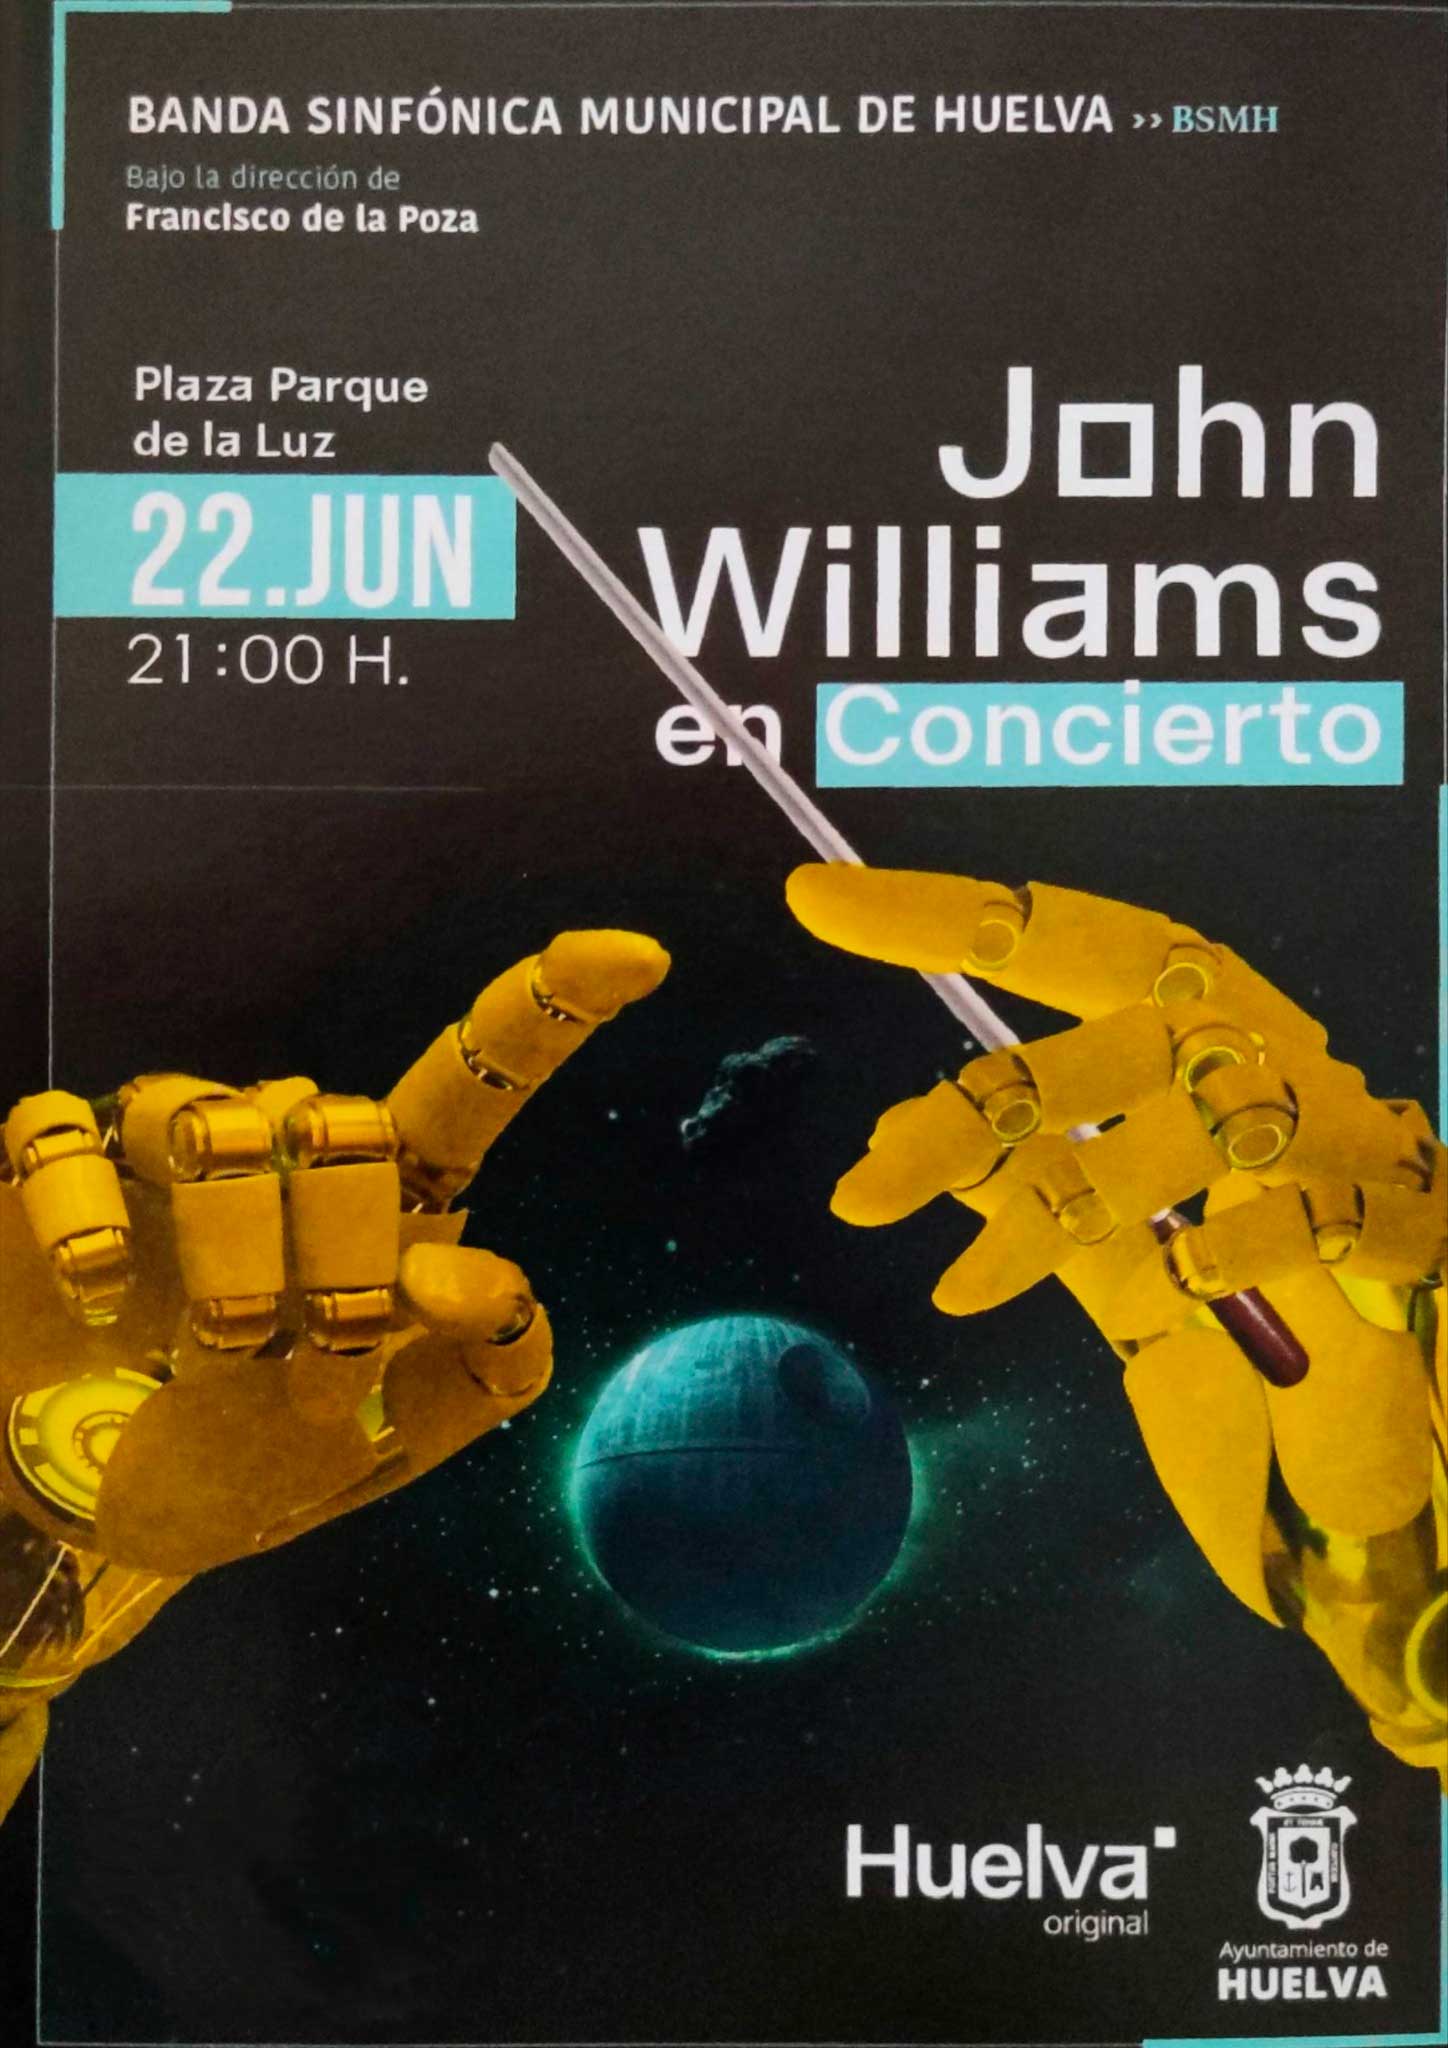 John Williams en concierto BSMH parque de la luz 22 de junio